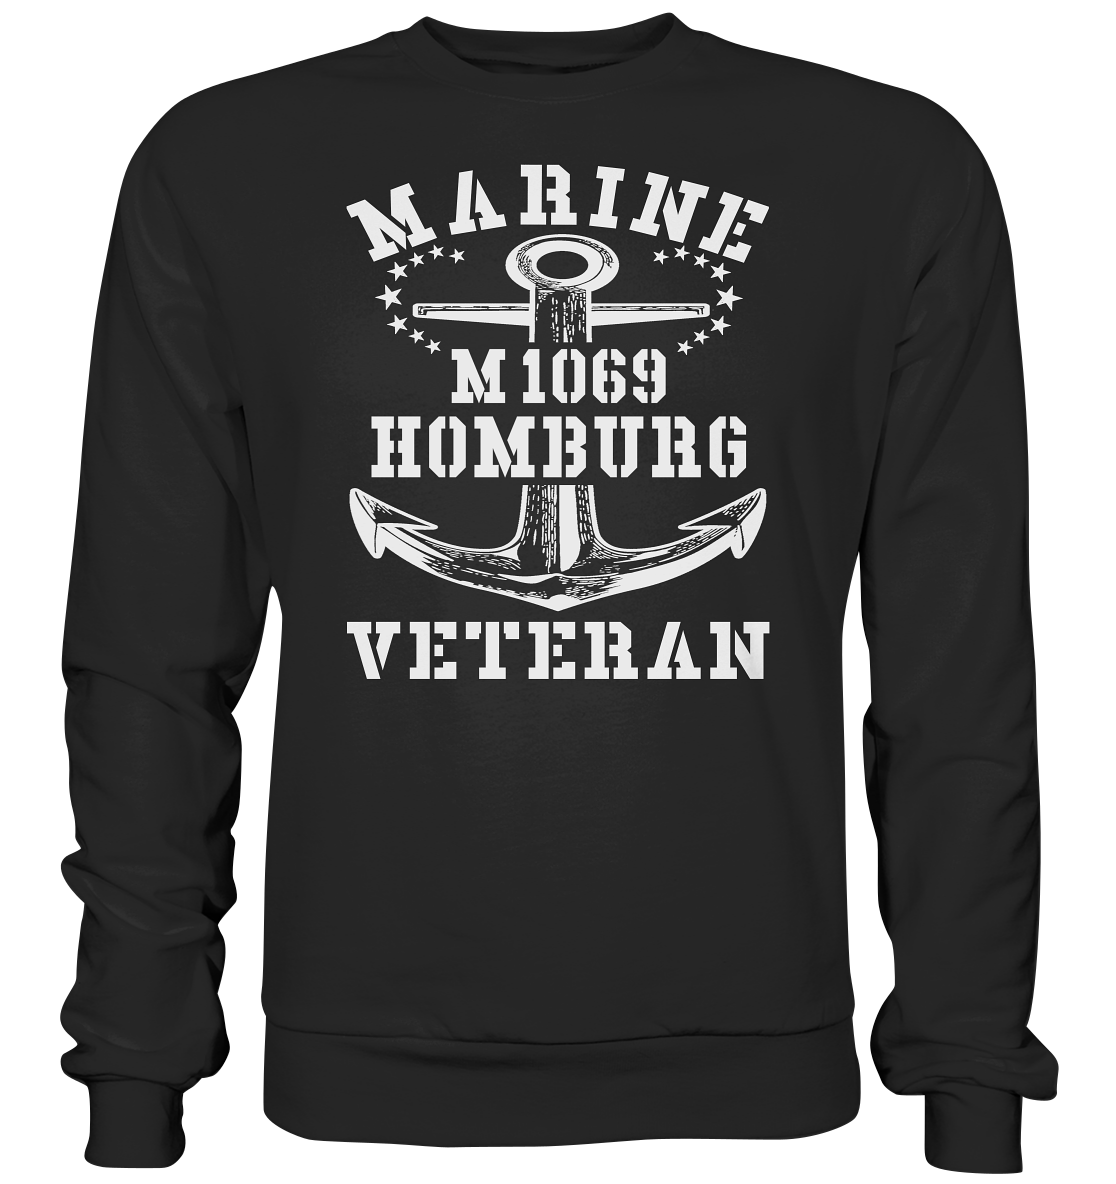 Mij.-Boot M1069 HOMBURG Marine Veteran - Premium Sweatshirt